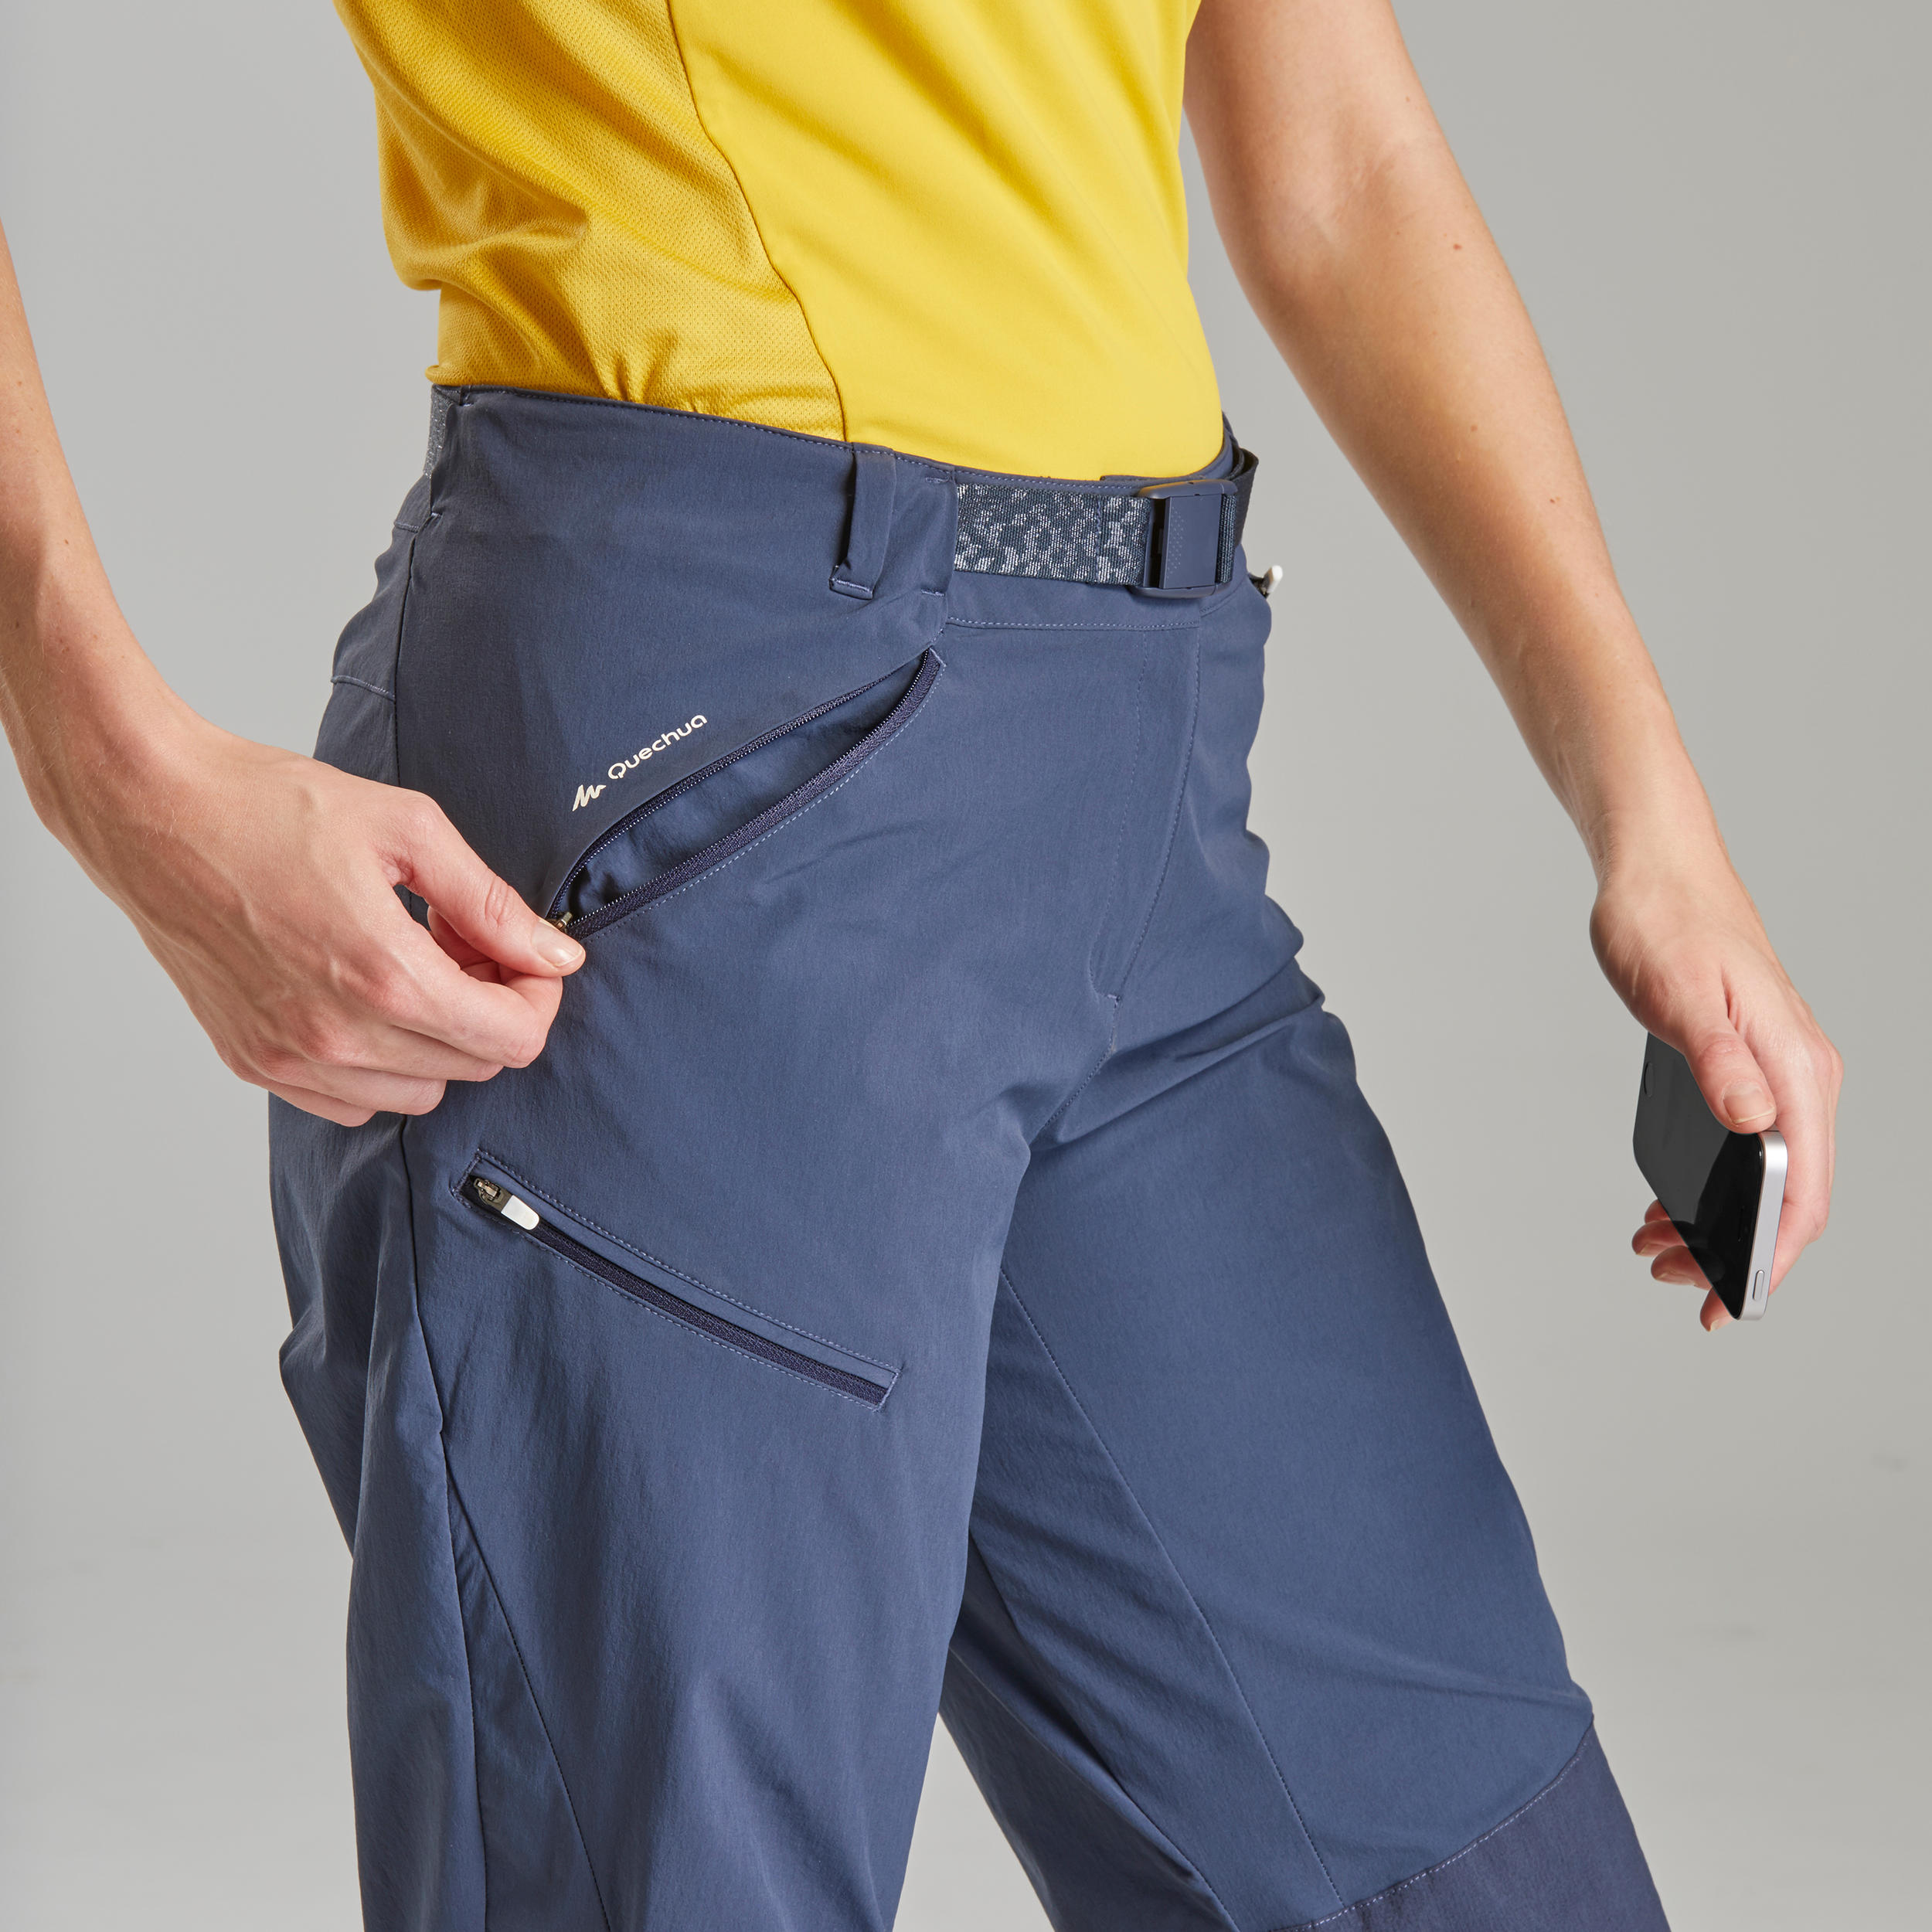 decathlon women's trousers